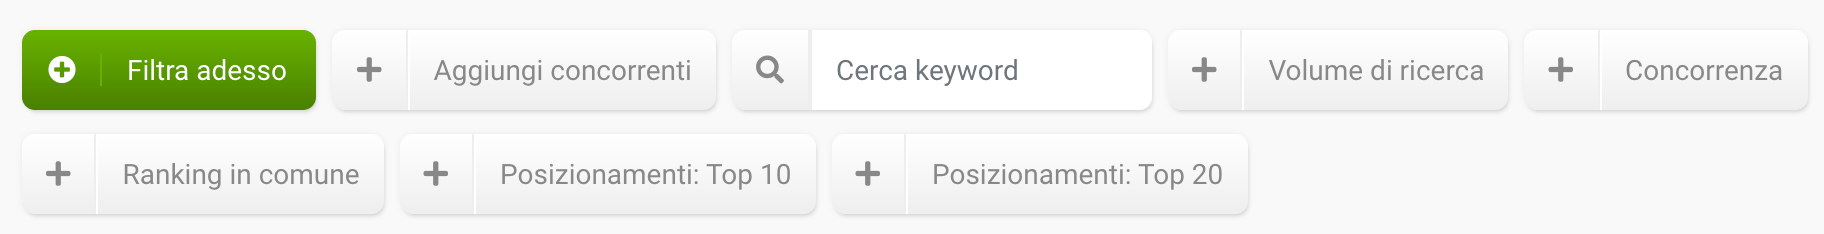 Opzioni filtro per le keyword non utilizzate